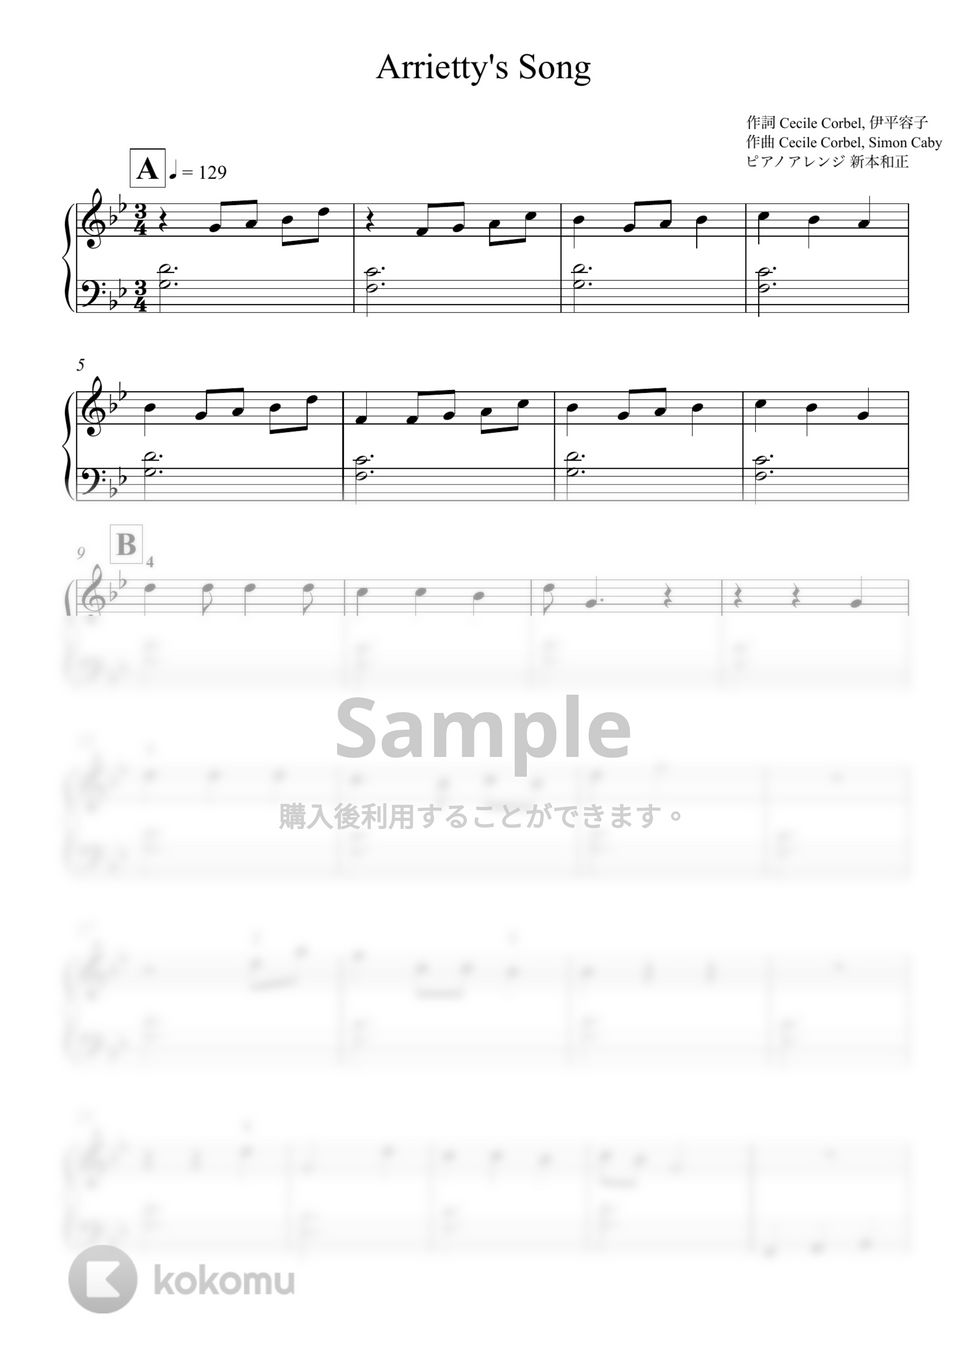 セシル・コルベル - Arrietty’s Song by 新本和正